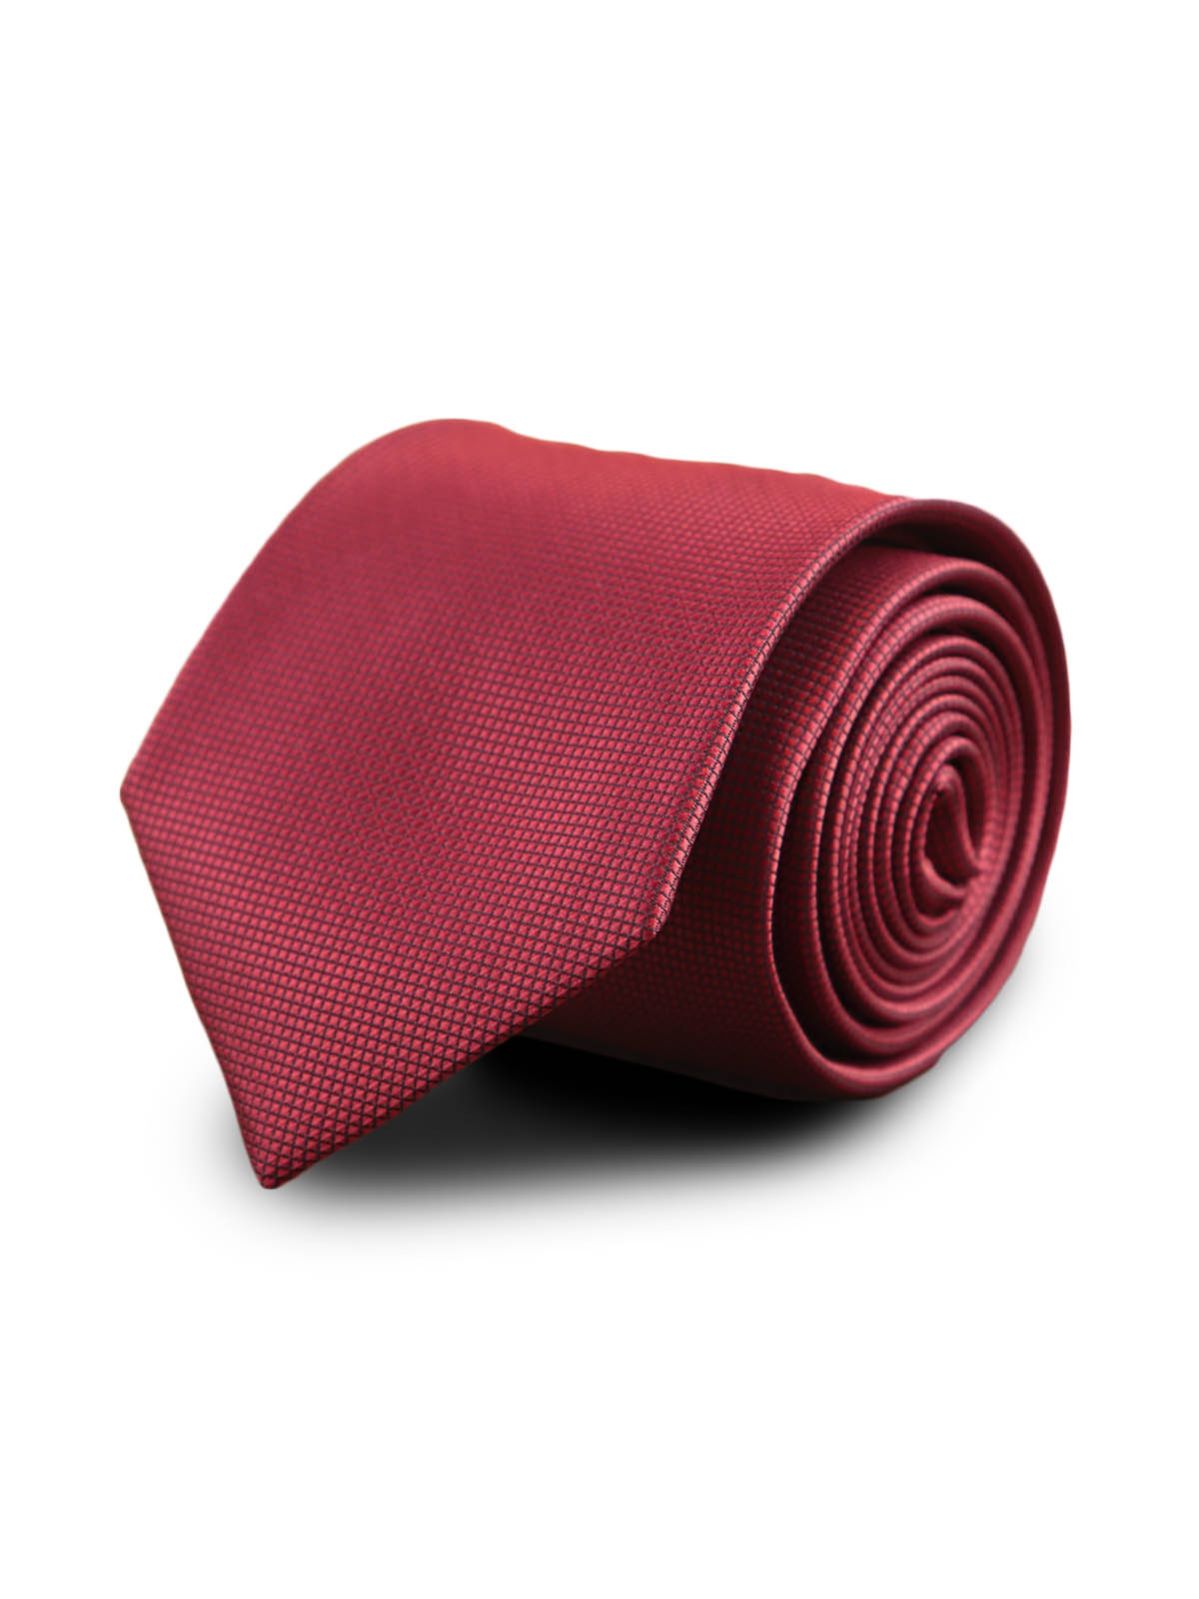 Галстук широкий красный с клеточной текстурой описание: Фасон - Широкий галстук, Материал - Микрофибра, Цвет - Красный, Размер - 7 см х 140 см, Страна производства - Турция.